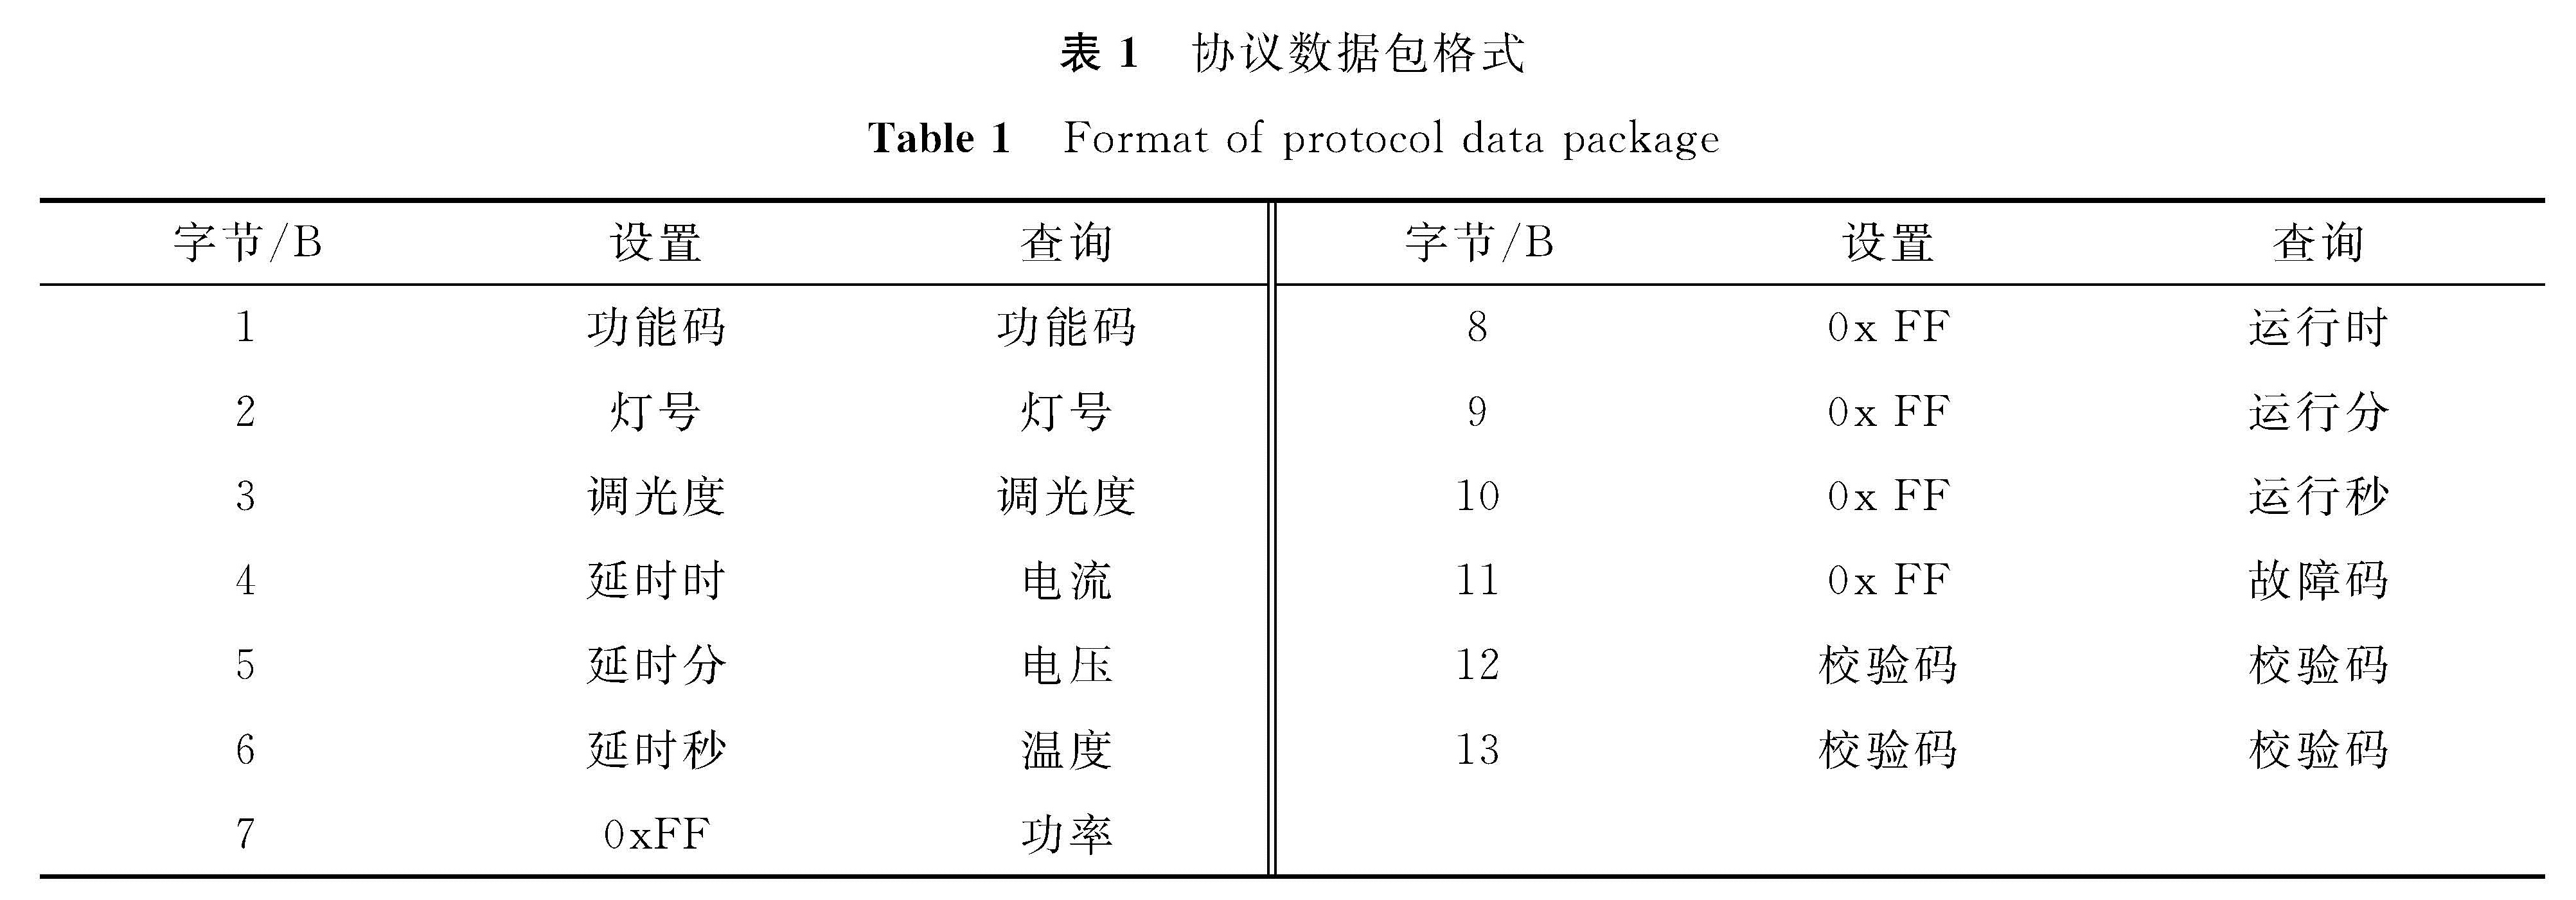 表1 协议数据包格式<br/>Table 1 Format of protocol data package